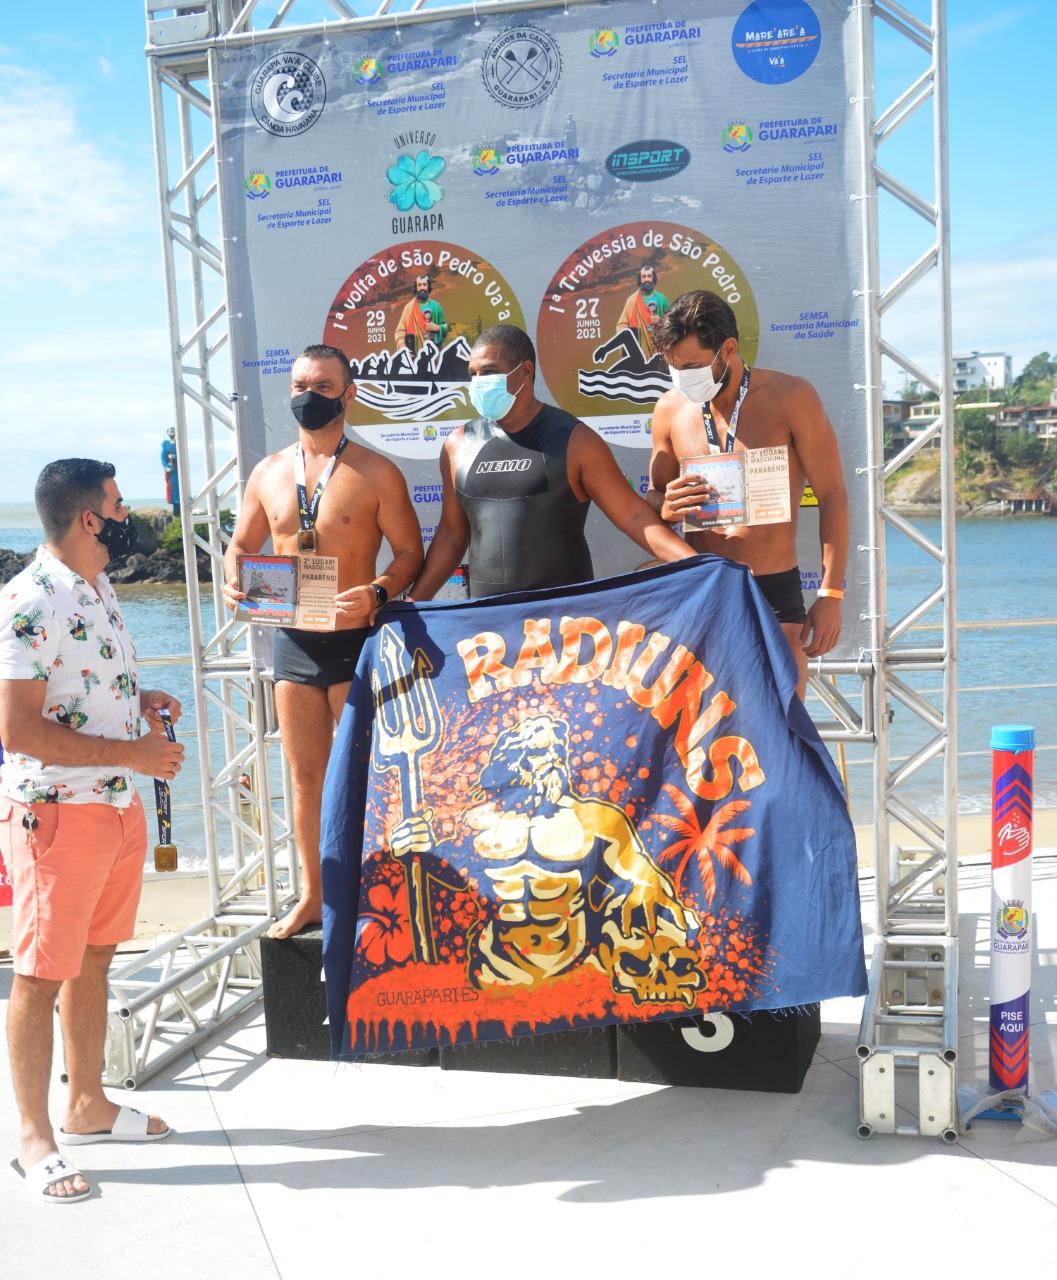 Prefeitura de Guarapari realiza 1ª Travessia de São Pedro/2021 de natação